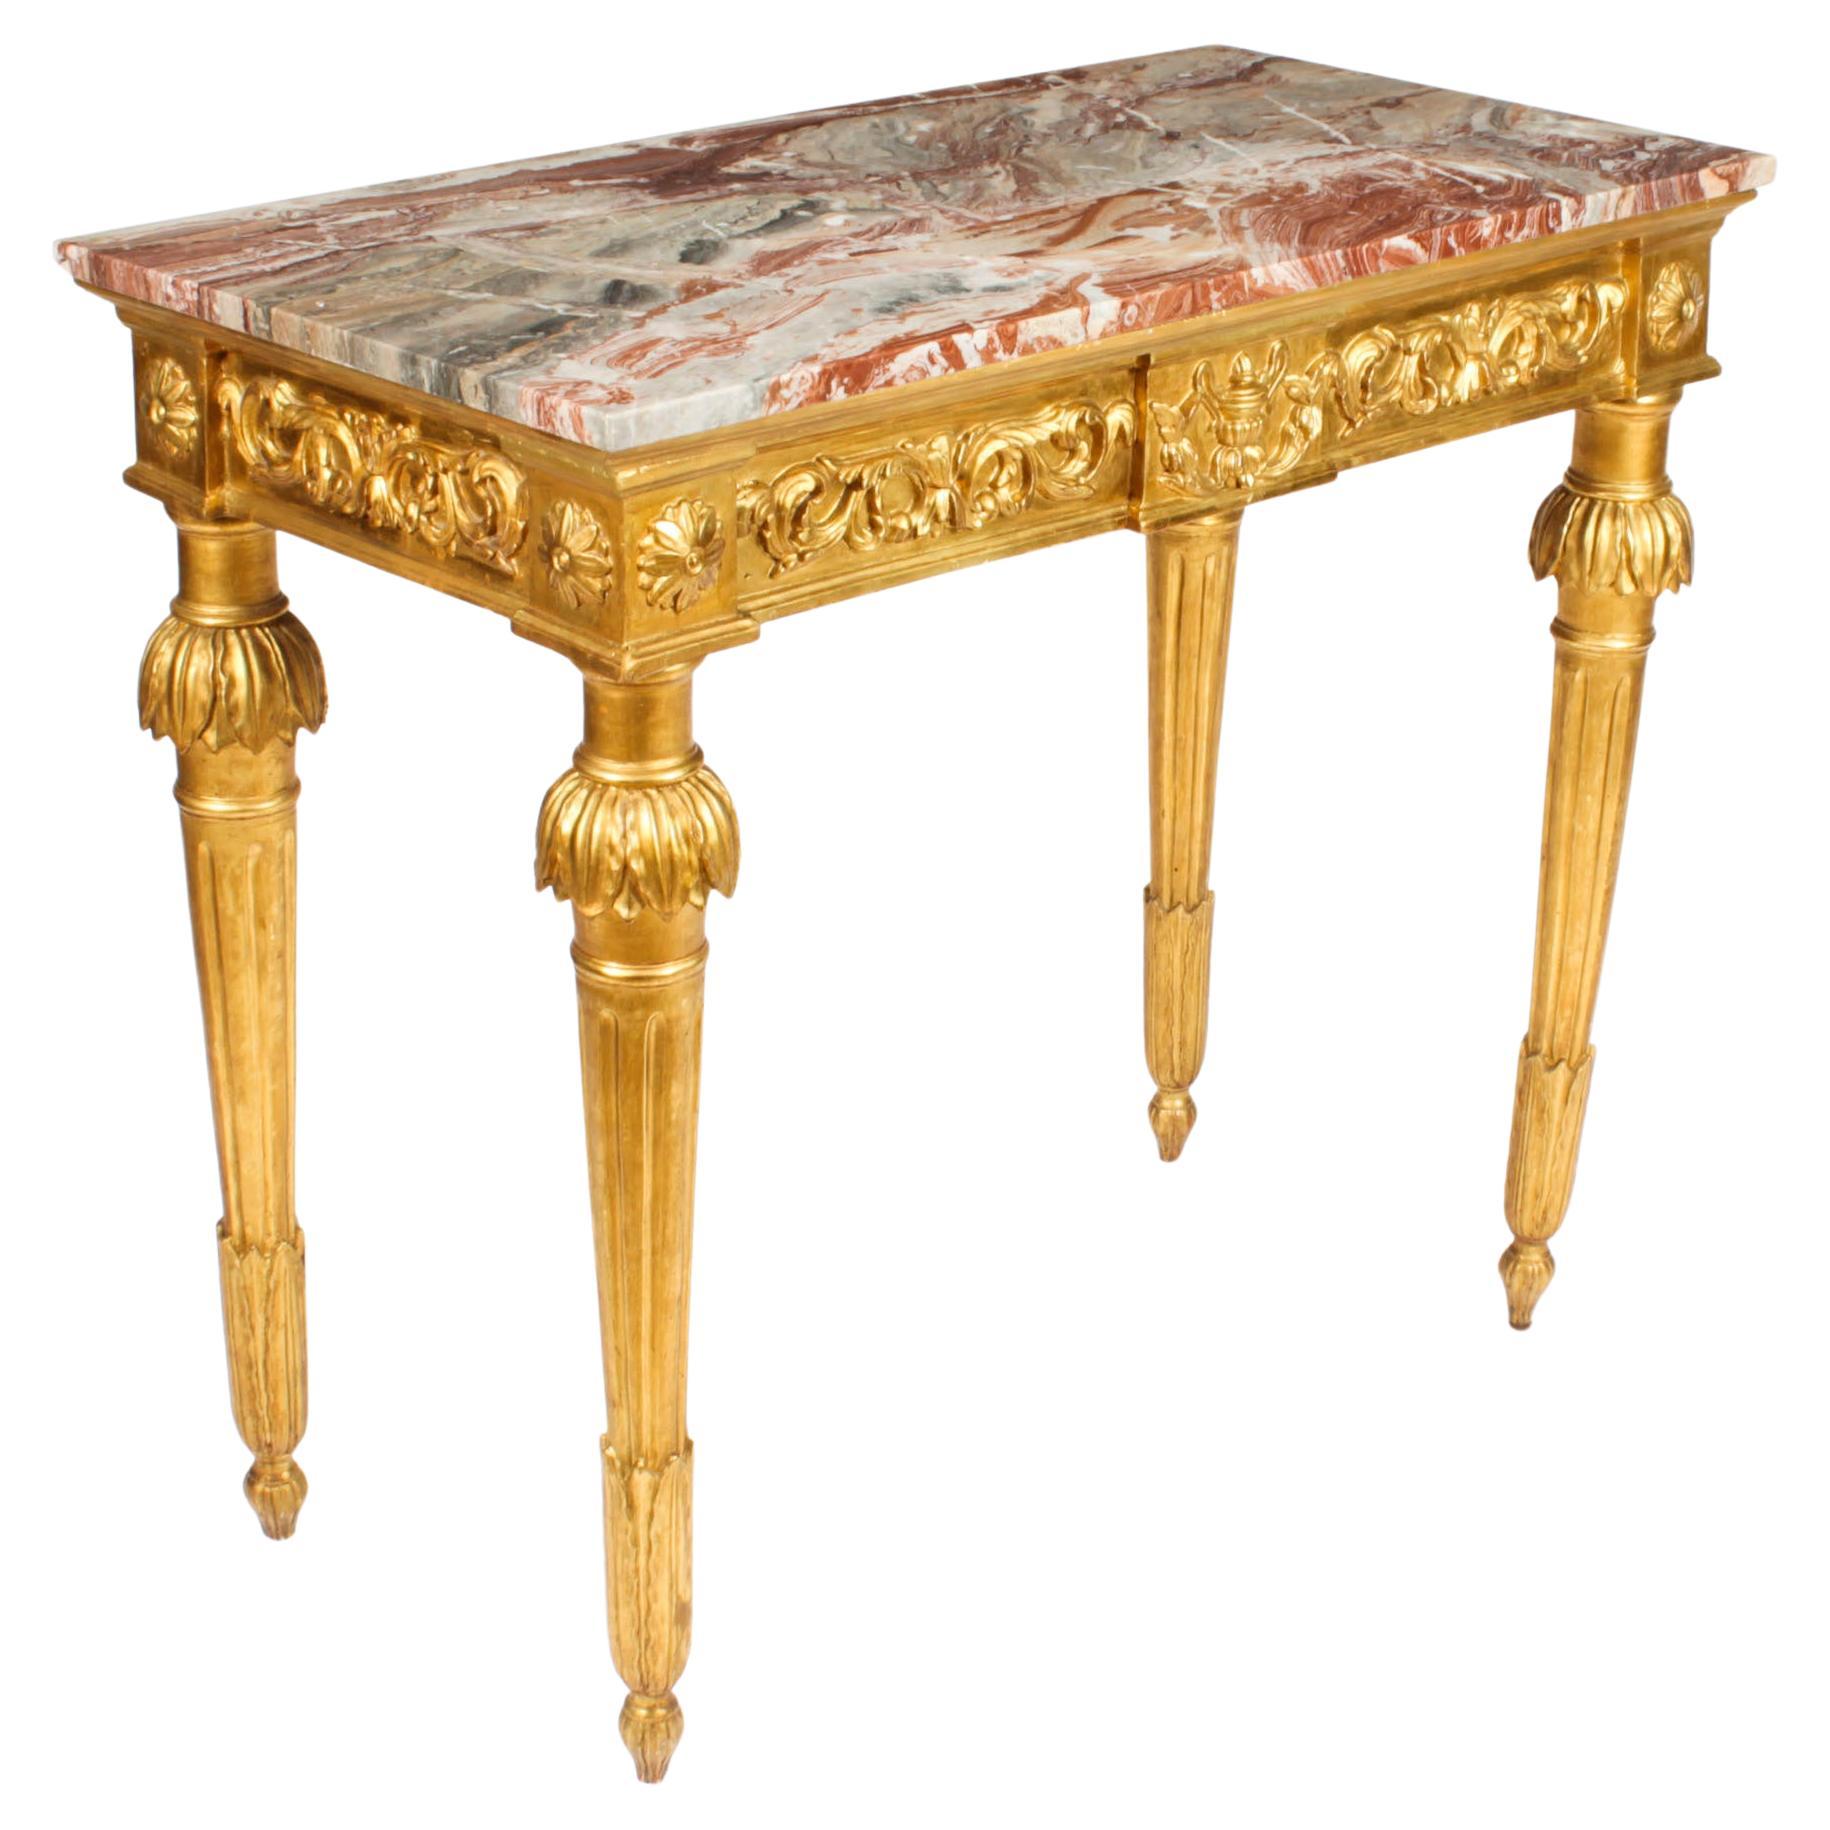 Antique table console en bois sculpté Louis XV Revival Pier Table 19ème siècle